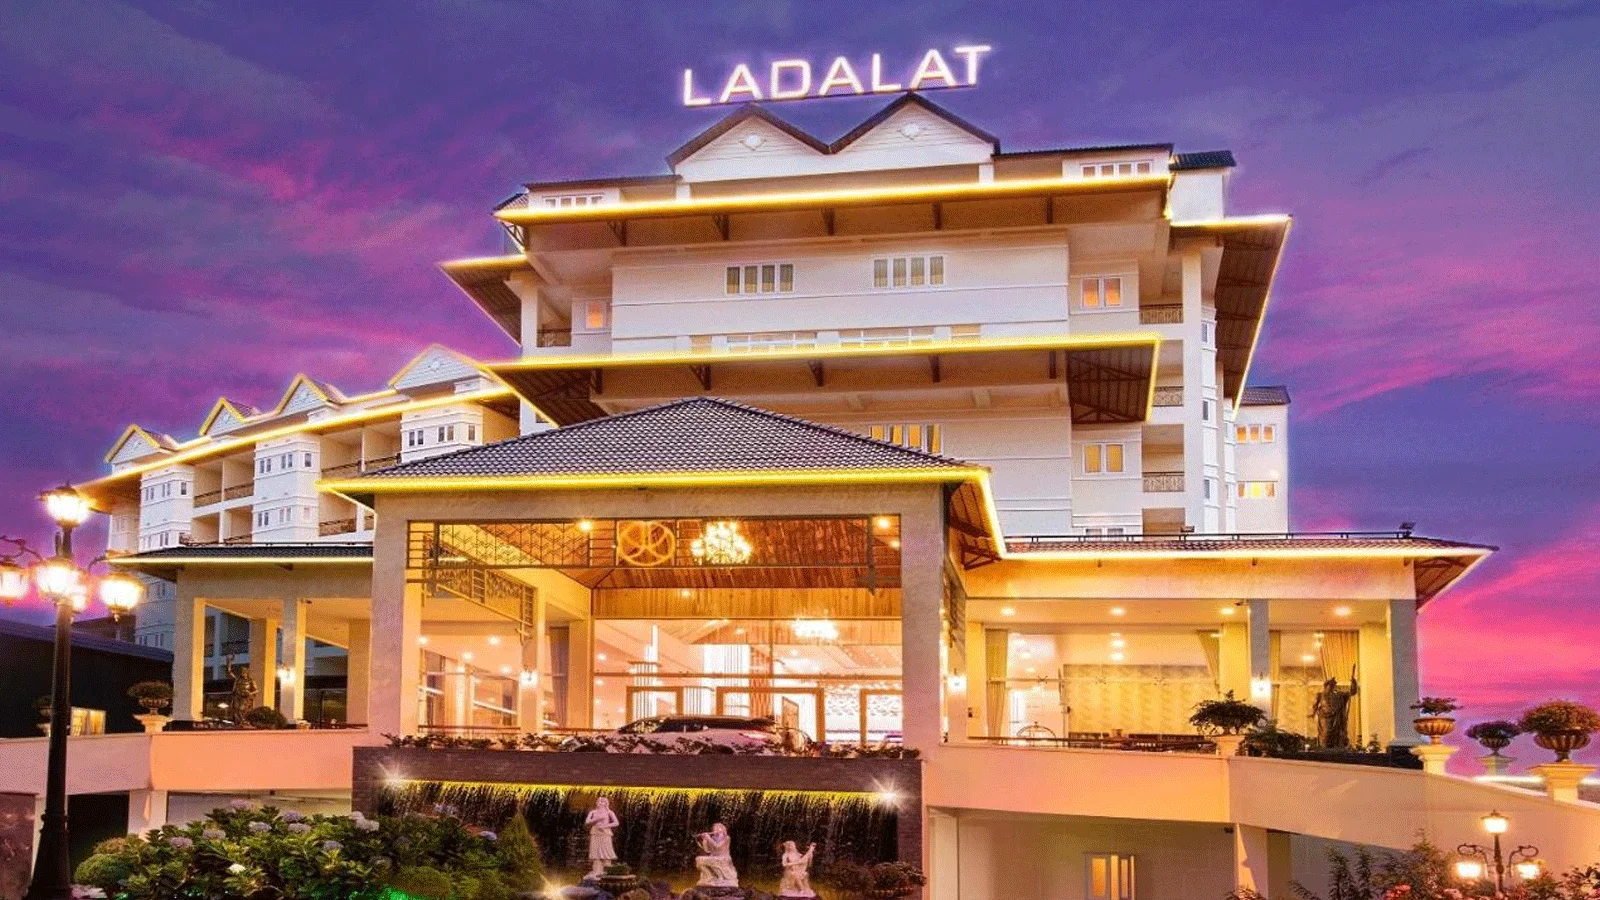 Combo 3 Ngày 2 Đêm Tại Ladalat Hotel 5 Sao Từ Hồ Chí Minh